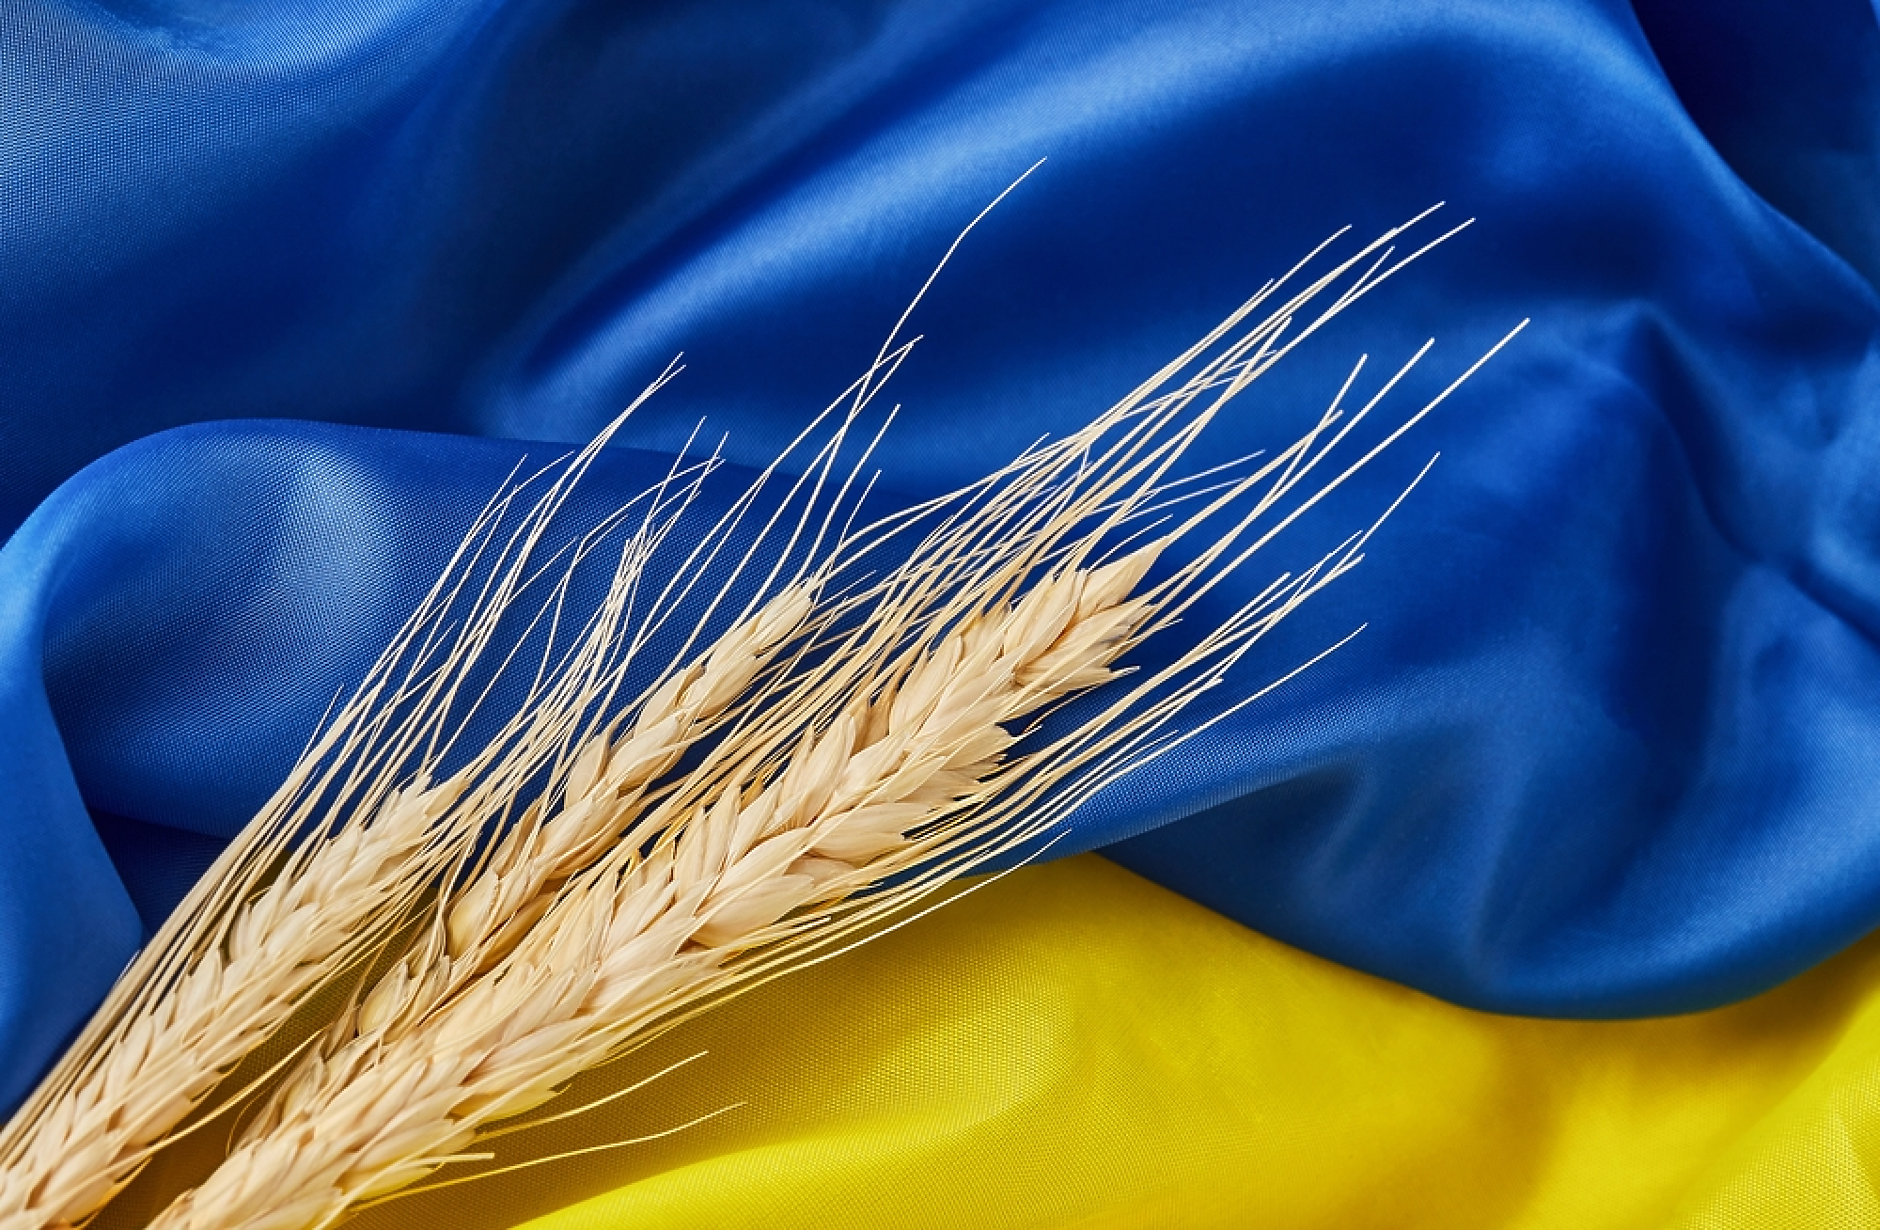 Украйна стана третият най-голям доставчик на селскостопански продукти за ЕС